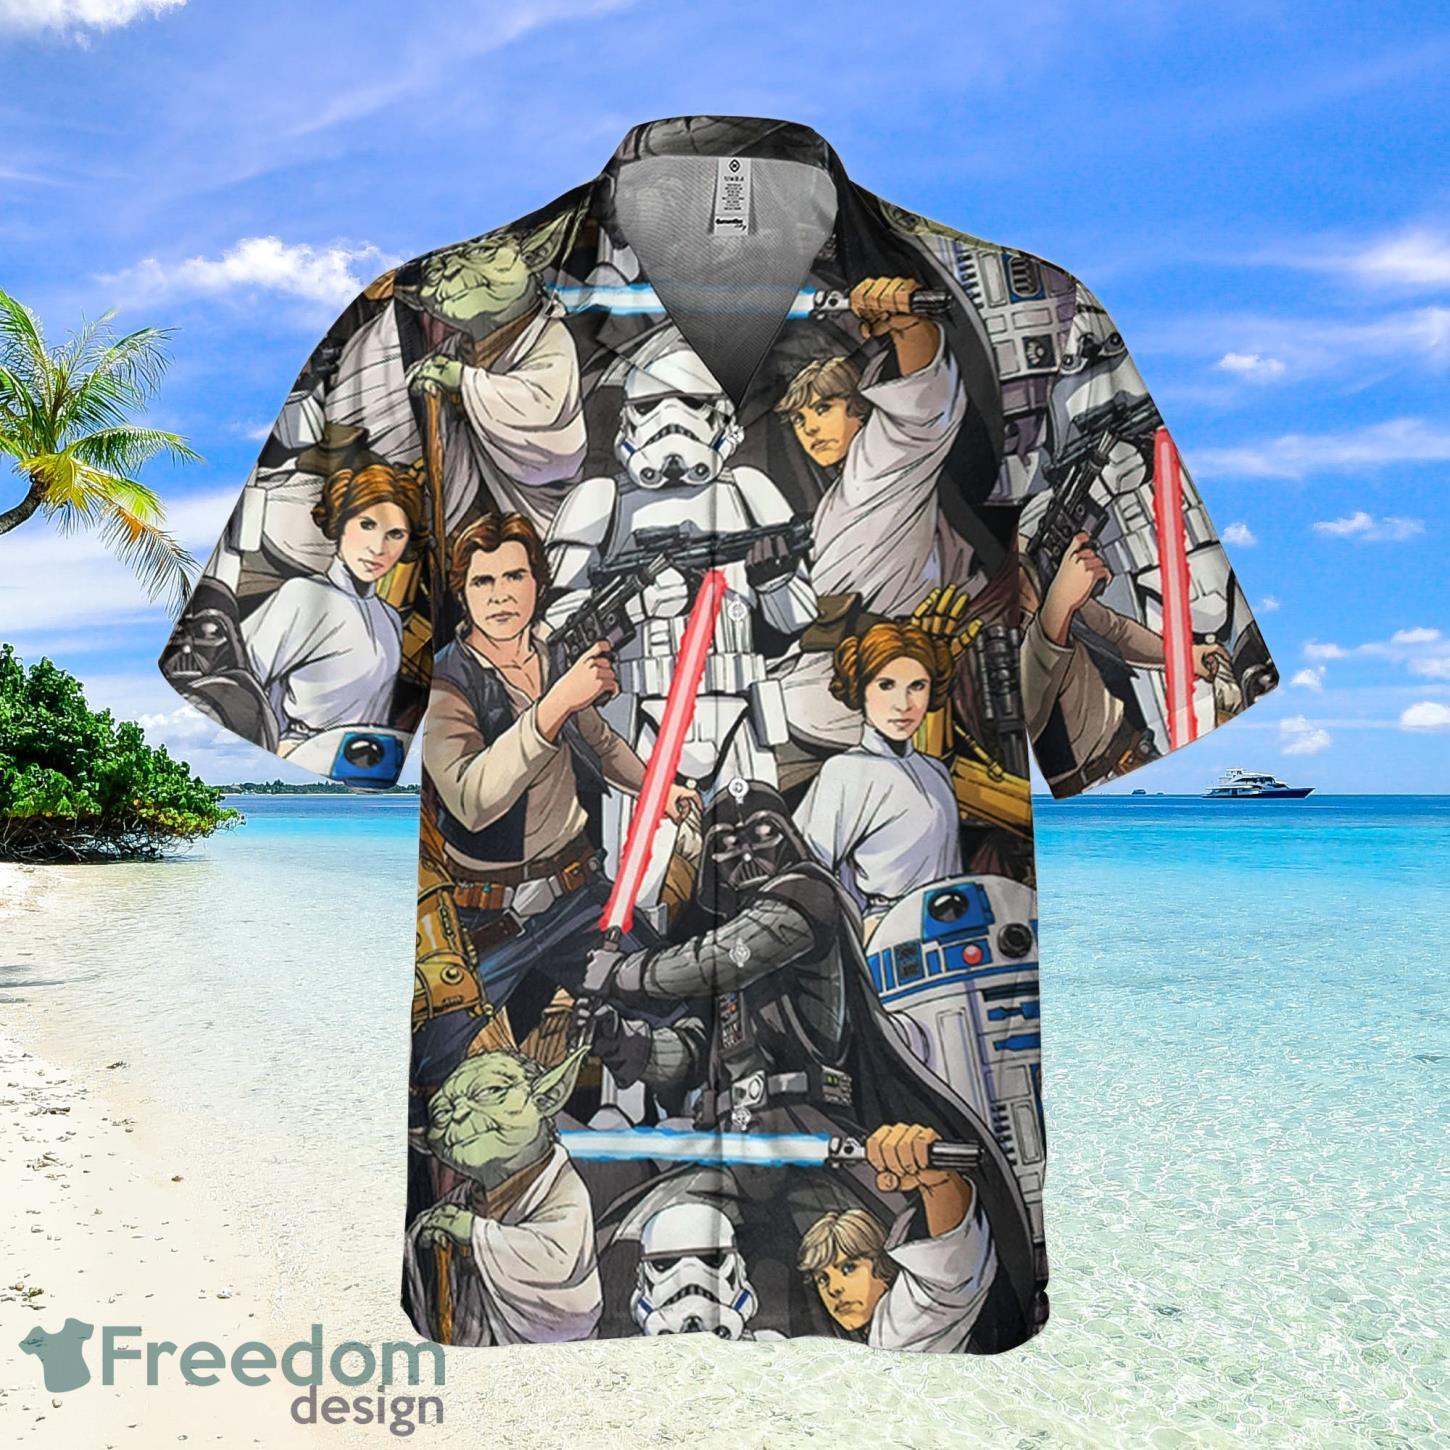 Star Wars R2D2 C3PO Darth Vader Luke Skywalker Chewbacca Yoda Art Disney  Fans Gift Star Wars Hawaiian Shirt And Shorts - Freedomdesign